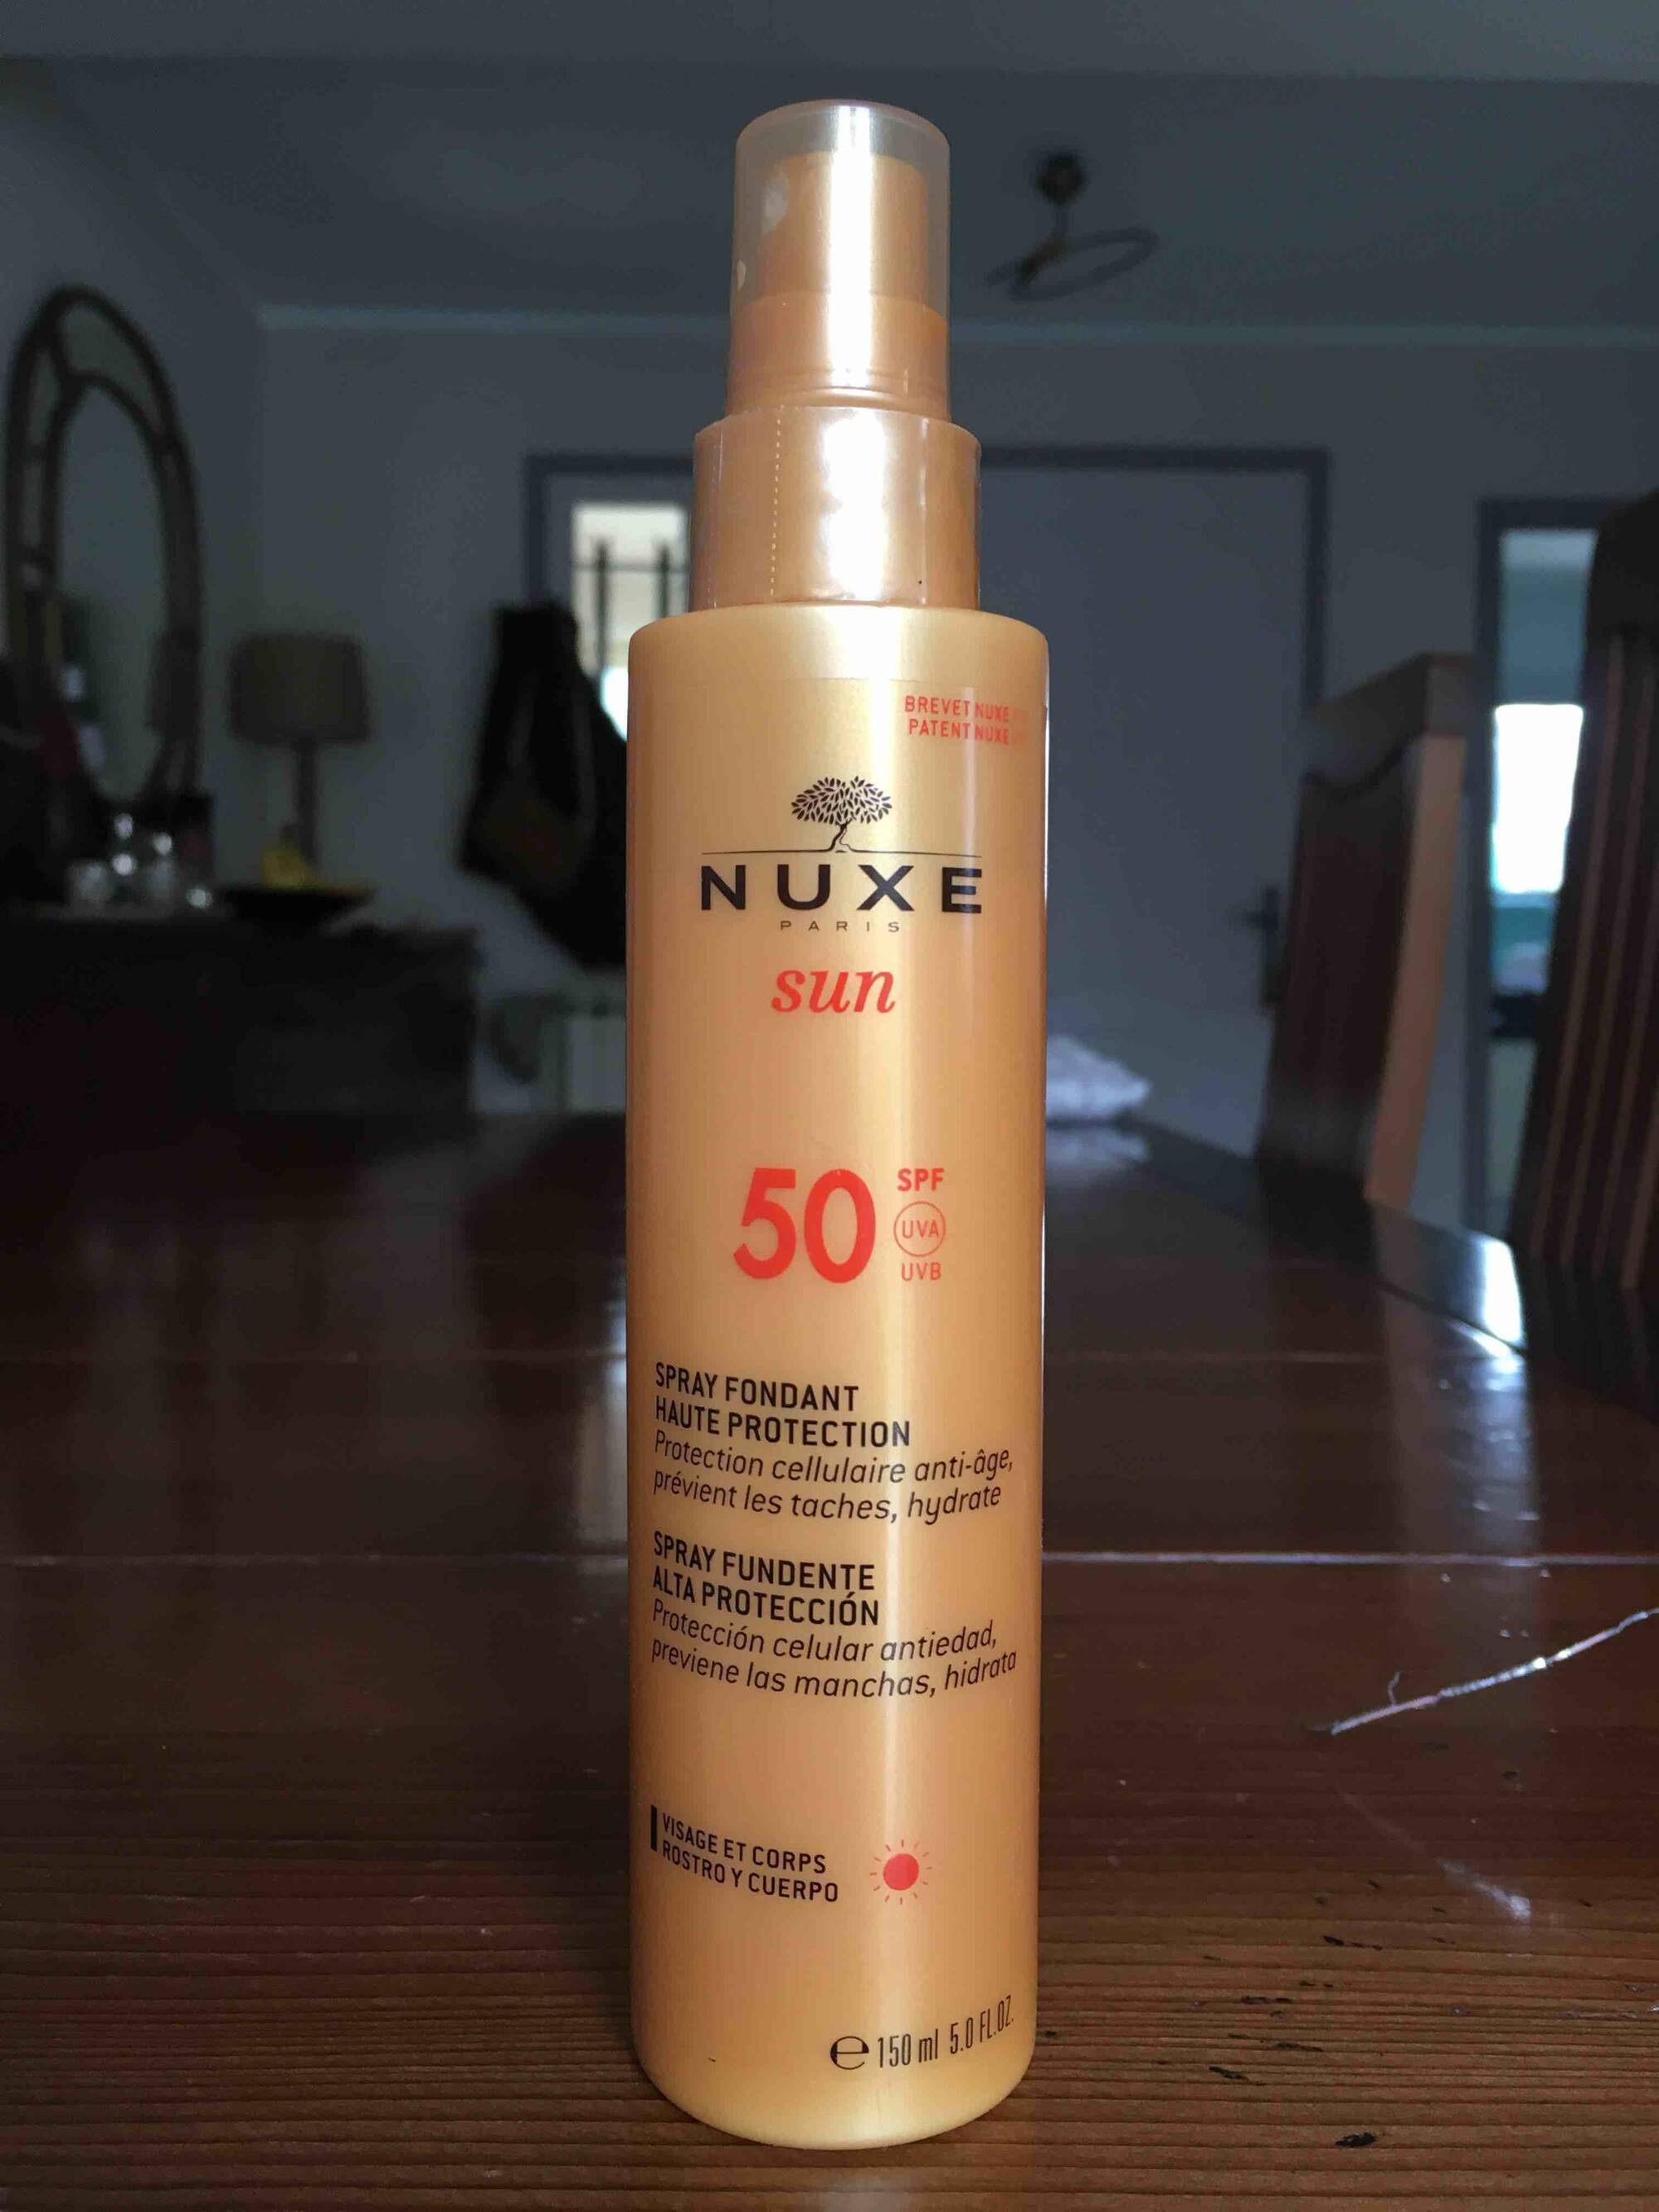 NUXE PARIS - Sun - Spray fondant haute protection 50 SPF